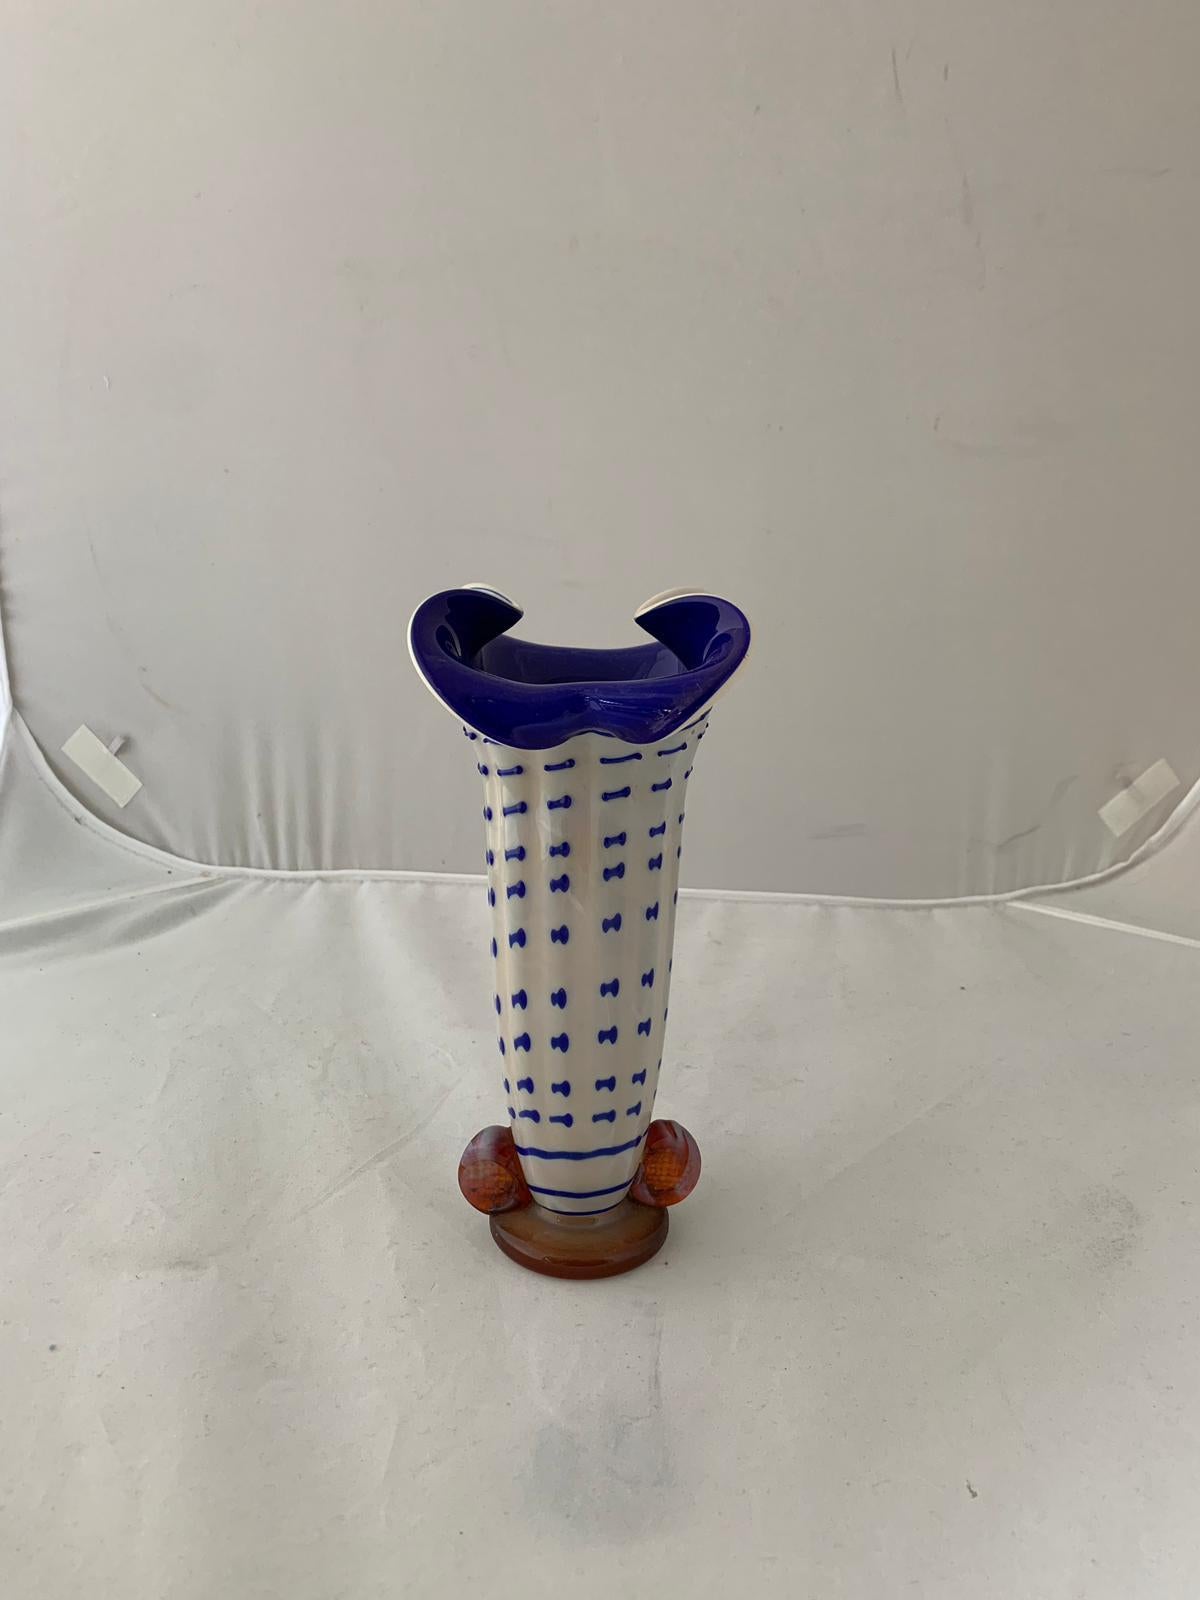 Vase in lattimo Glas in Zinksulfid dekoriert und blau beschichtet, die Basis und die beiden geheftet unterstützt in Honig-Cognac-Glas schattiert lattimo, ist die Vase mit gepunkteten Linien in Richtung der Mündung verziert und werden Material und